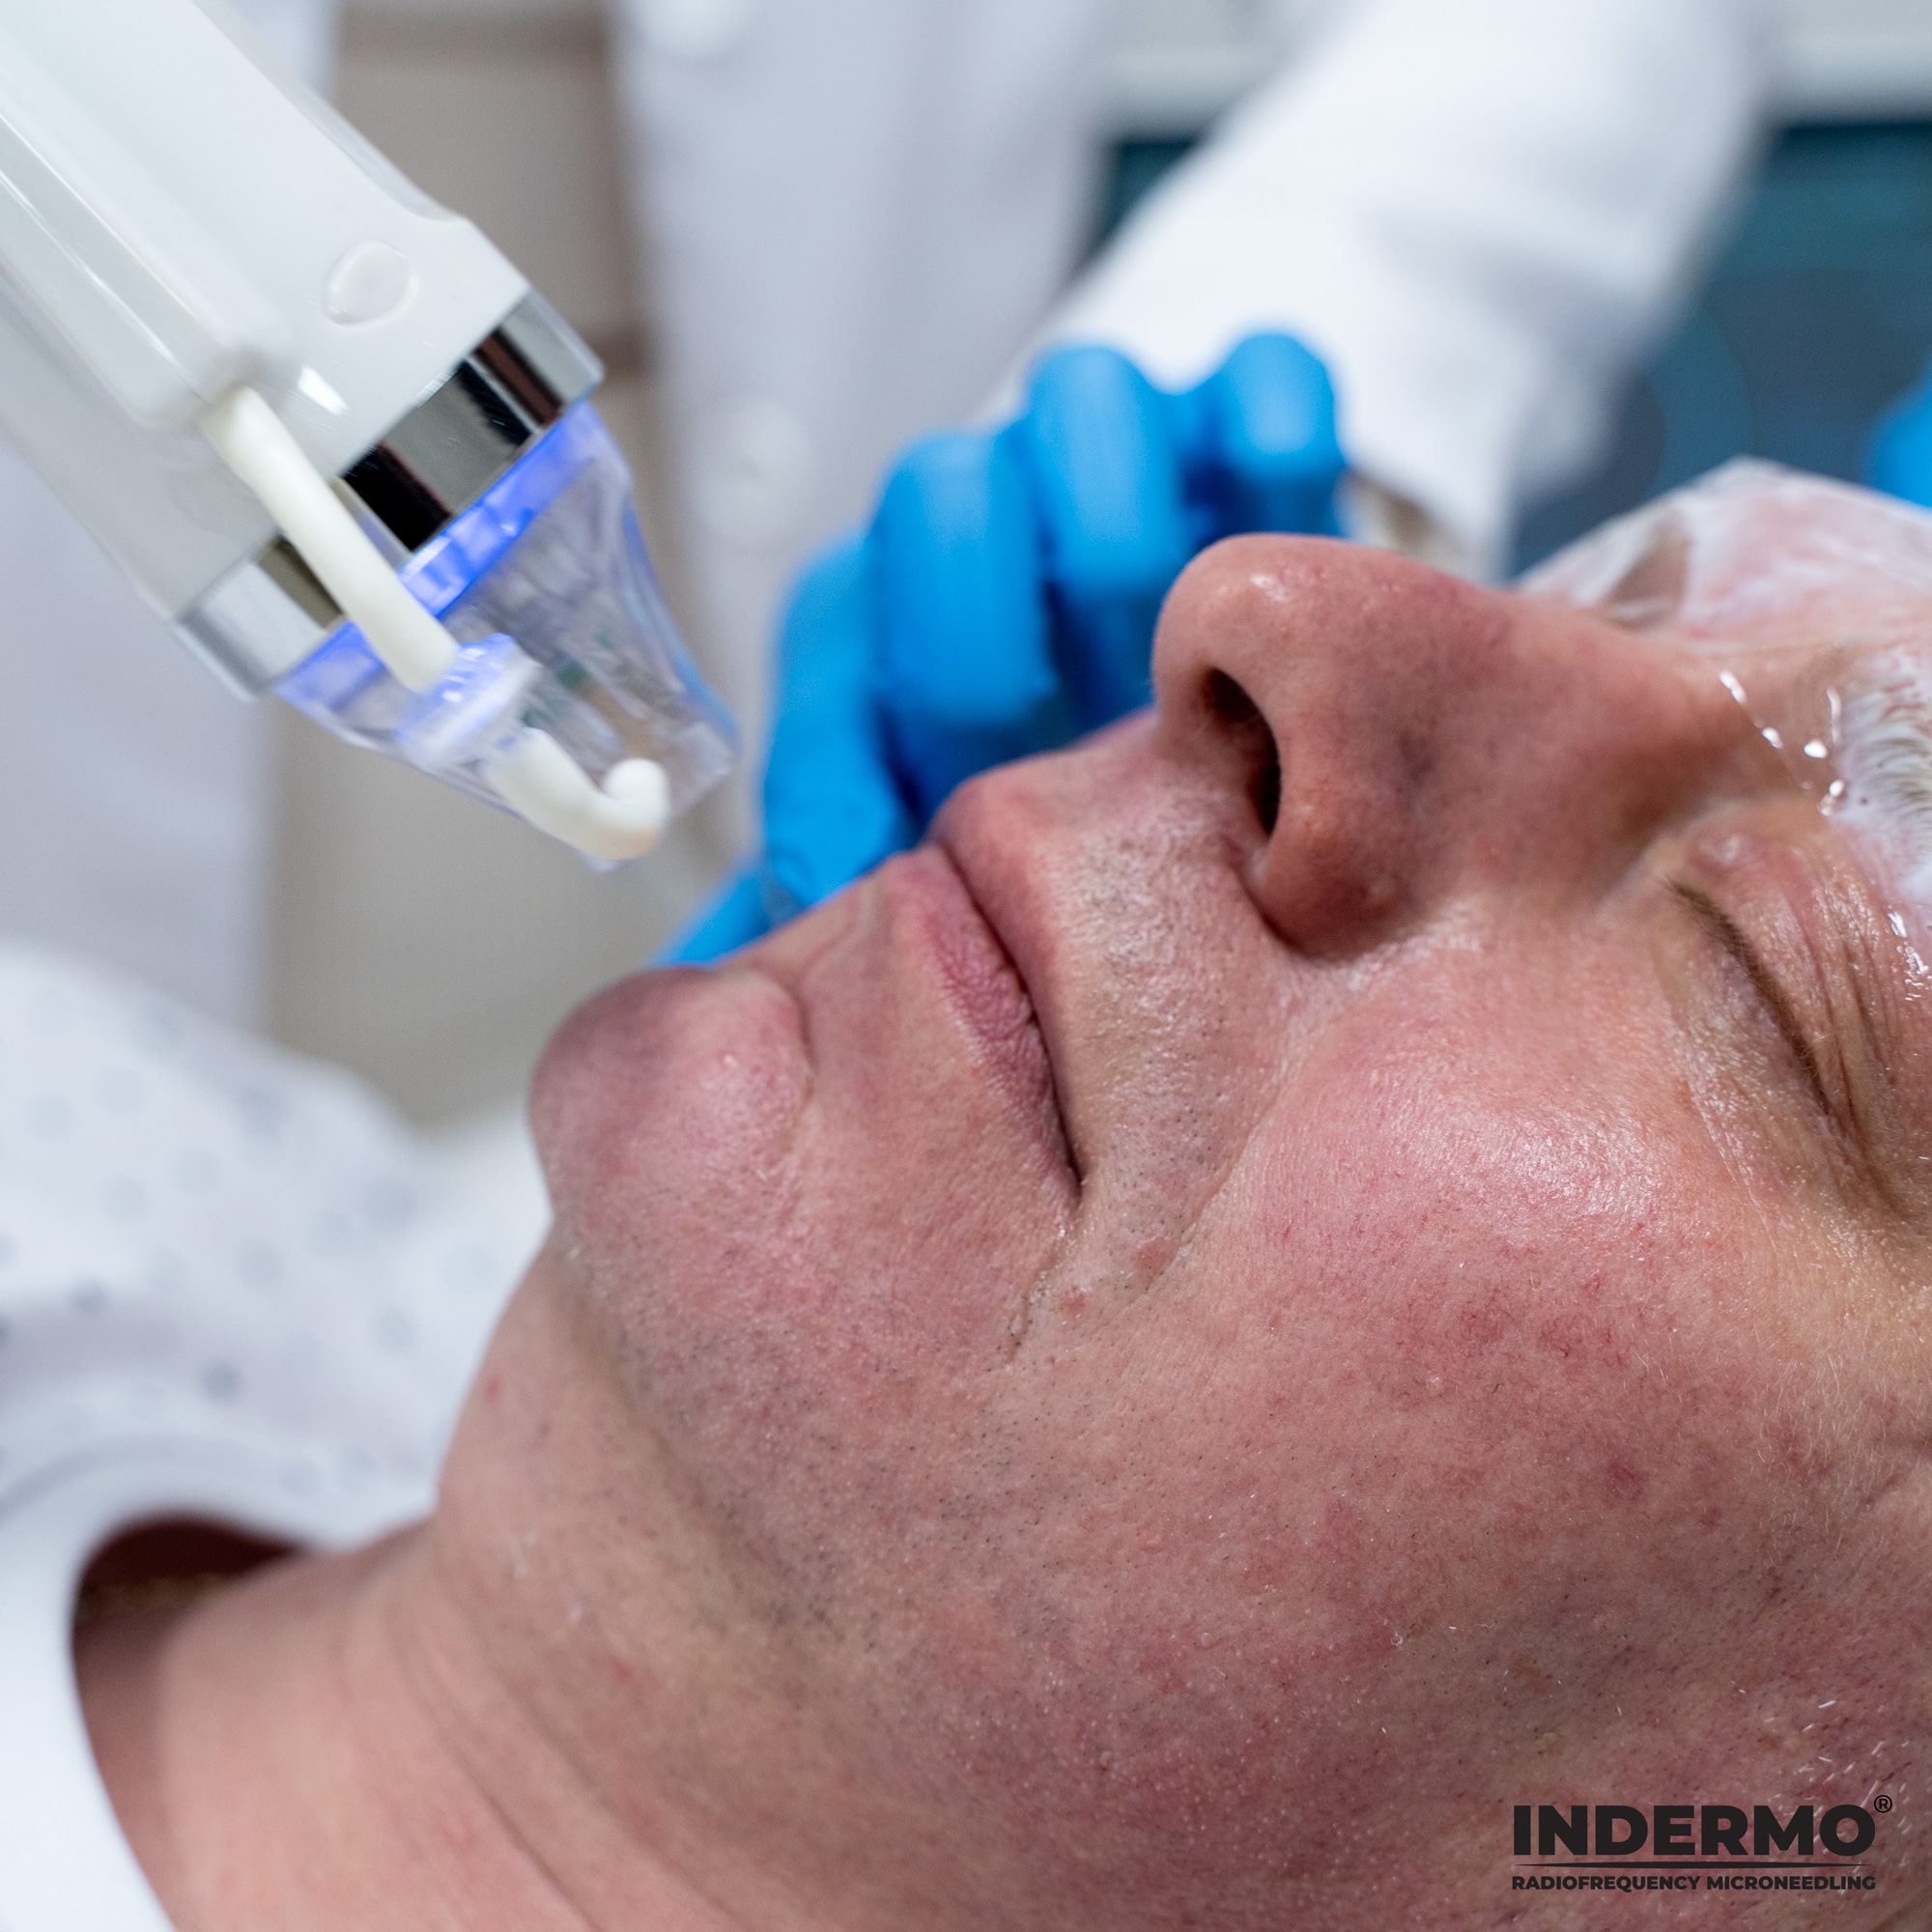 Podczas terapii RF nie ma ryzyka poparzenia skóry na twarzy